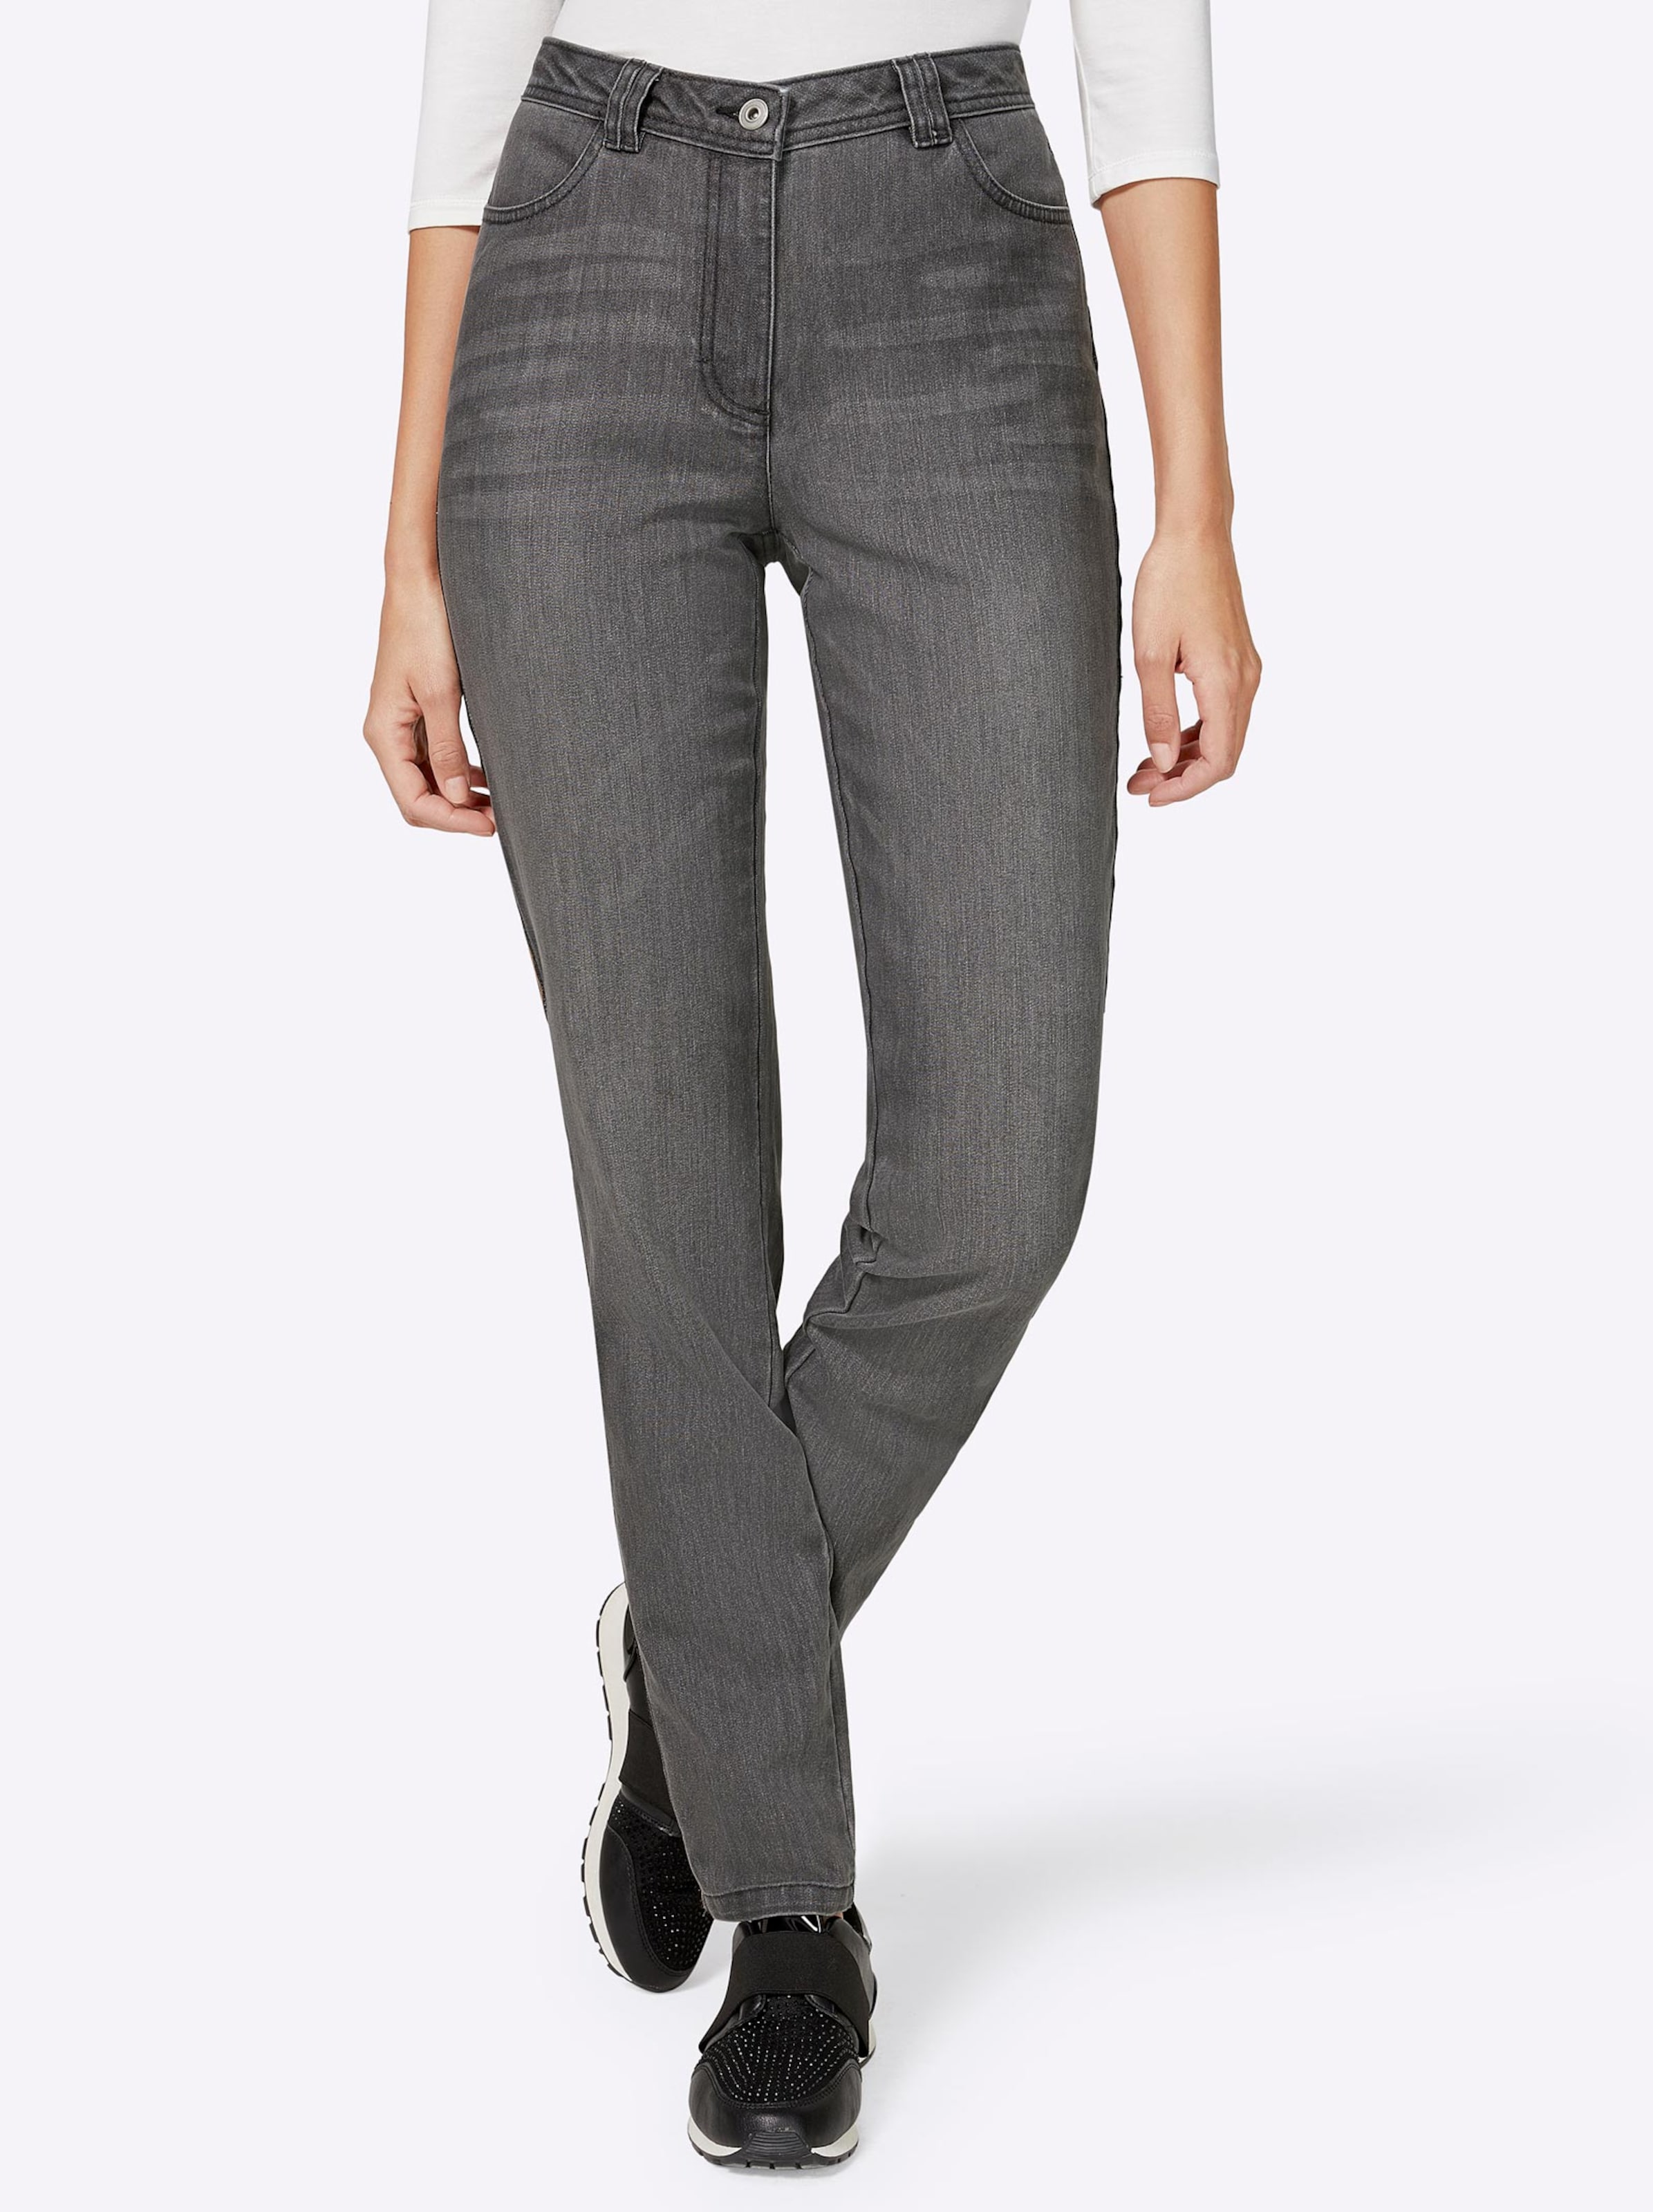 Damenmode Jeans Jeans in grey-denim 